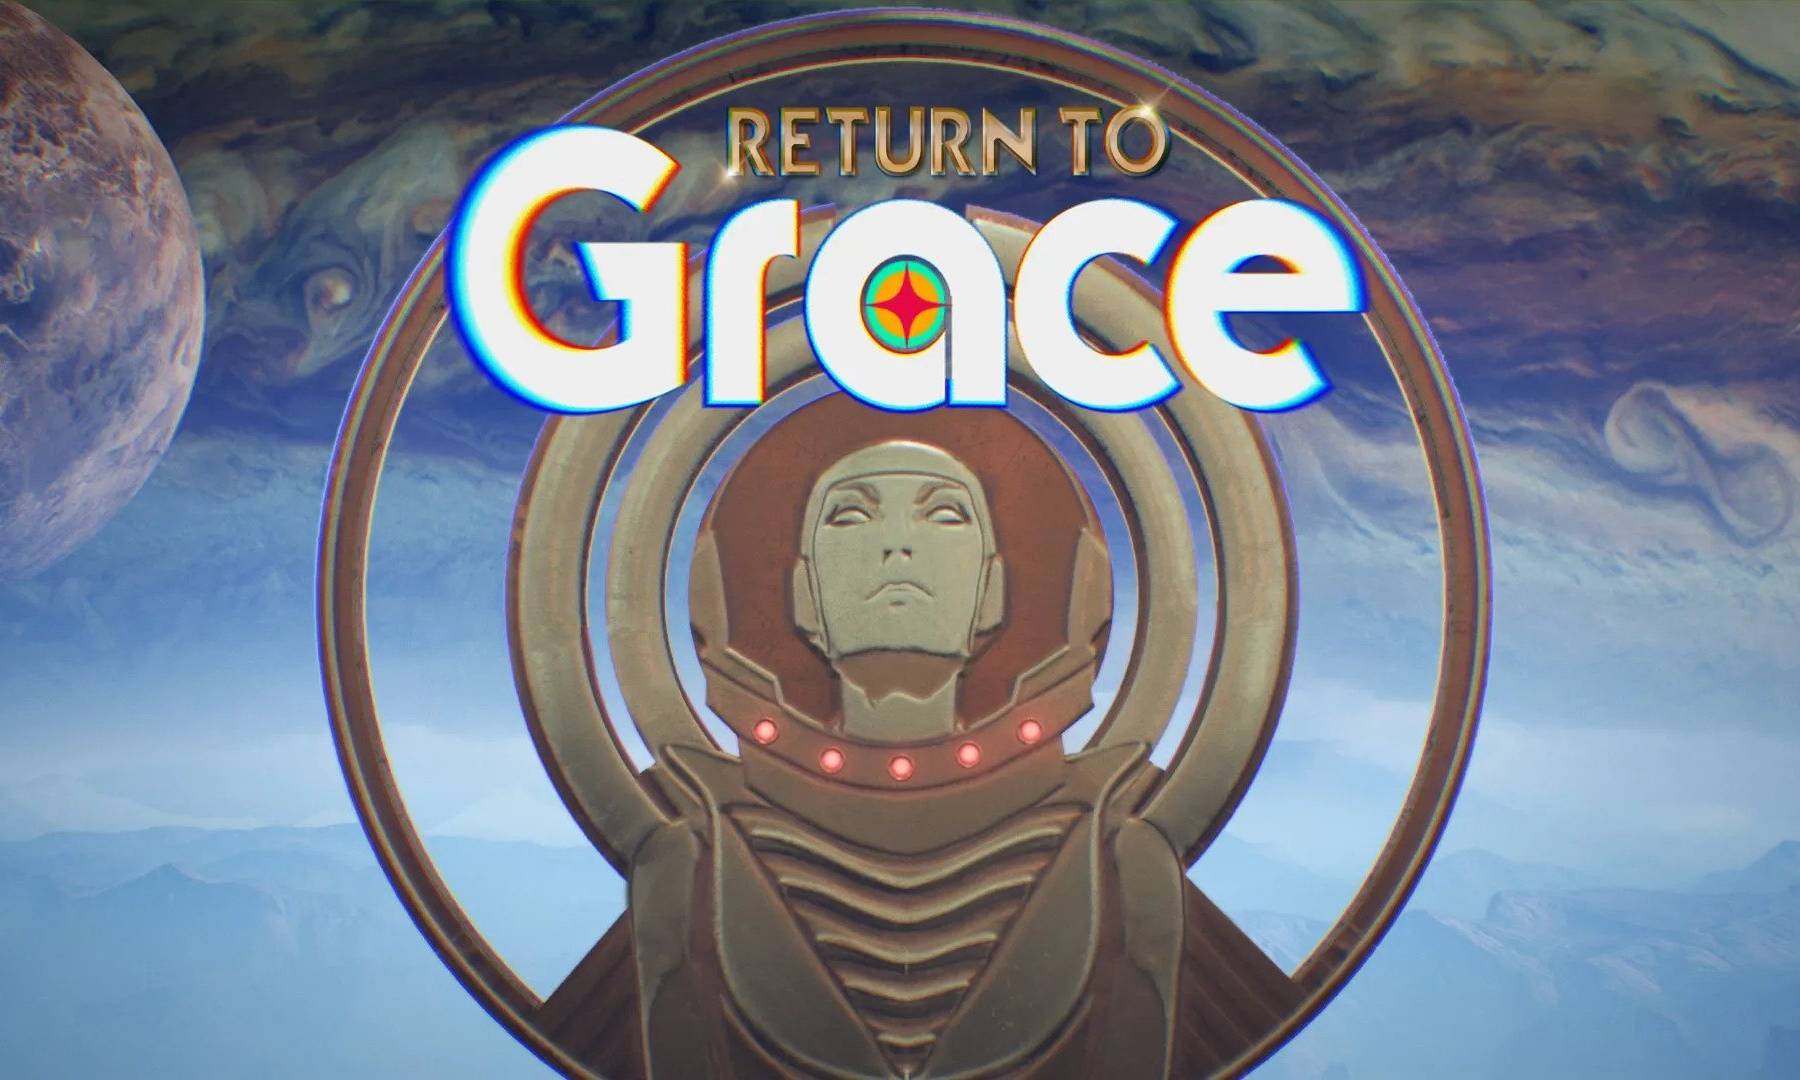 Return to Grace – Egy kissé rövid visszatérés a gépisten kebelére - Teszt